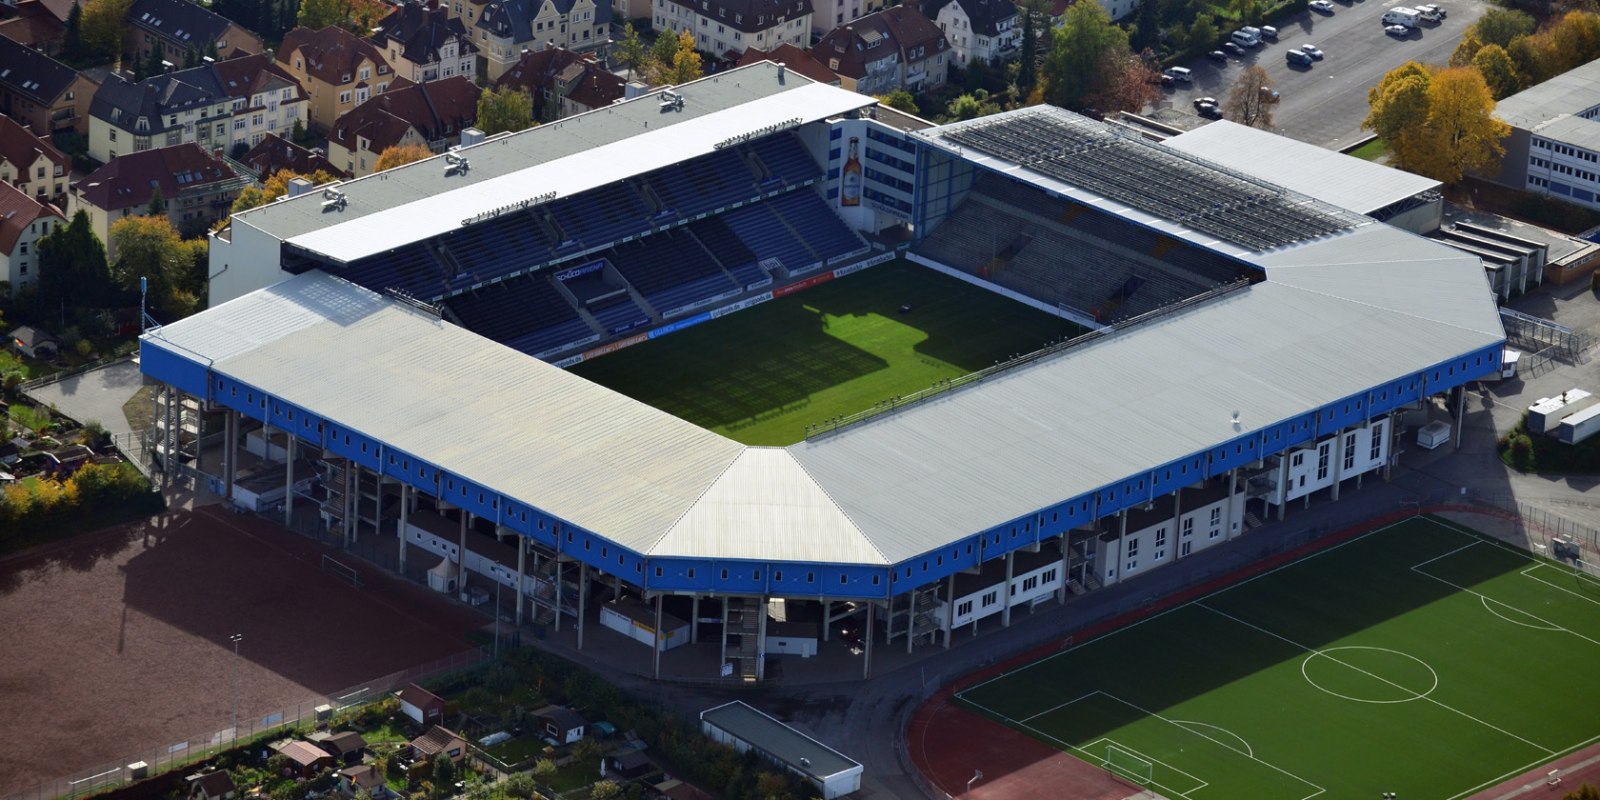 Stadion SchücoArena Bielefeld aus der Vogelperspektive. Ein offenes Stadion mit überdachtern Tribühenen, die Außenfassade ist blau.